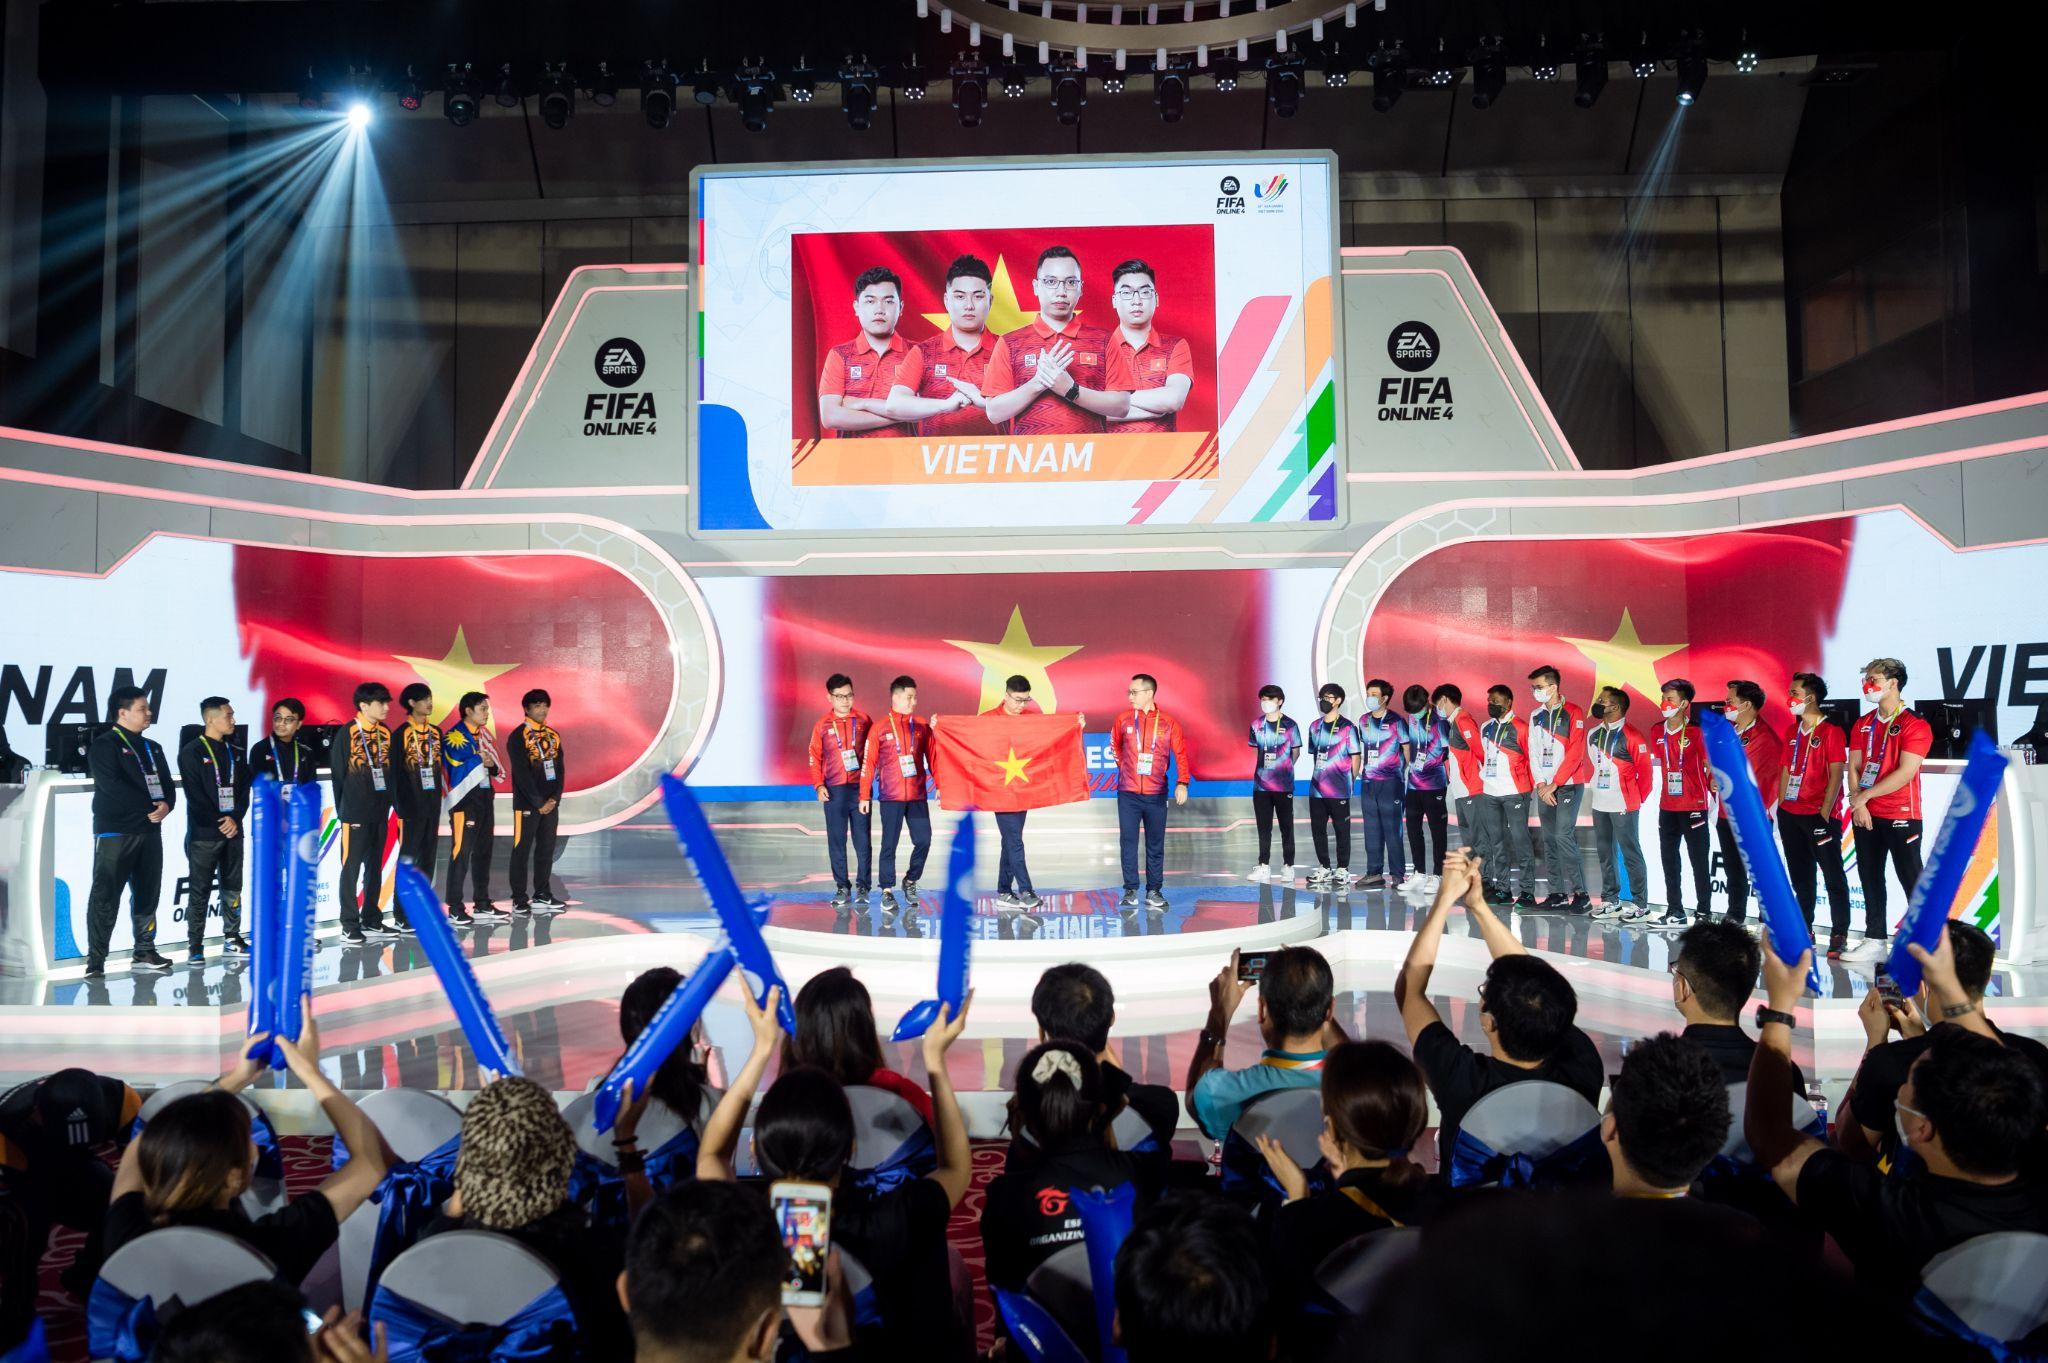 Ngày đầu ra quân nội dung Fifa Online 4 tại SEA Games 31, đội tuyển Việt Nam đại thắng chờ ngày đánh bại Thái Lan